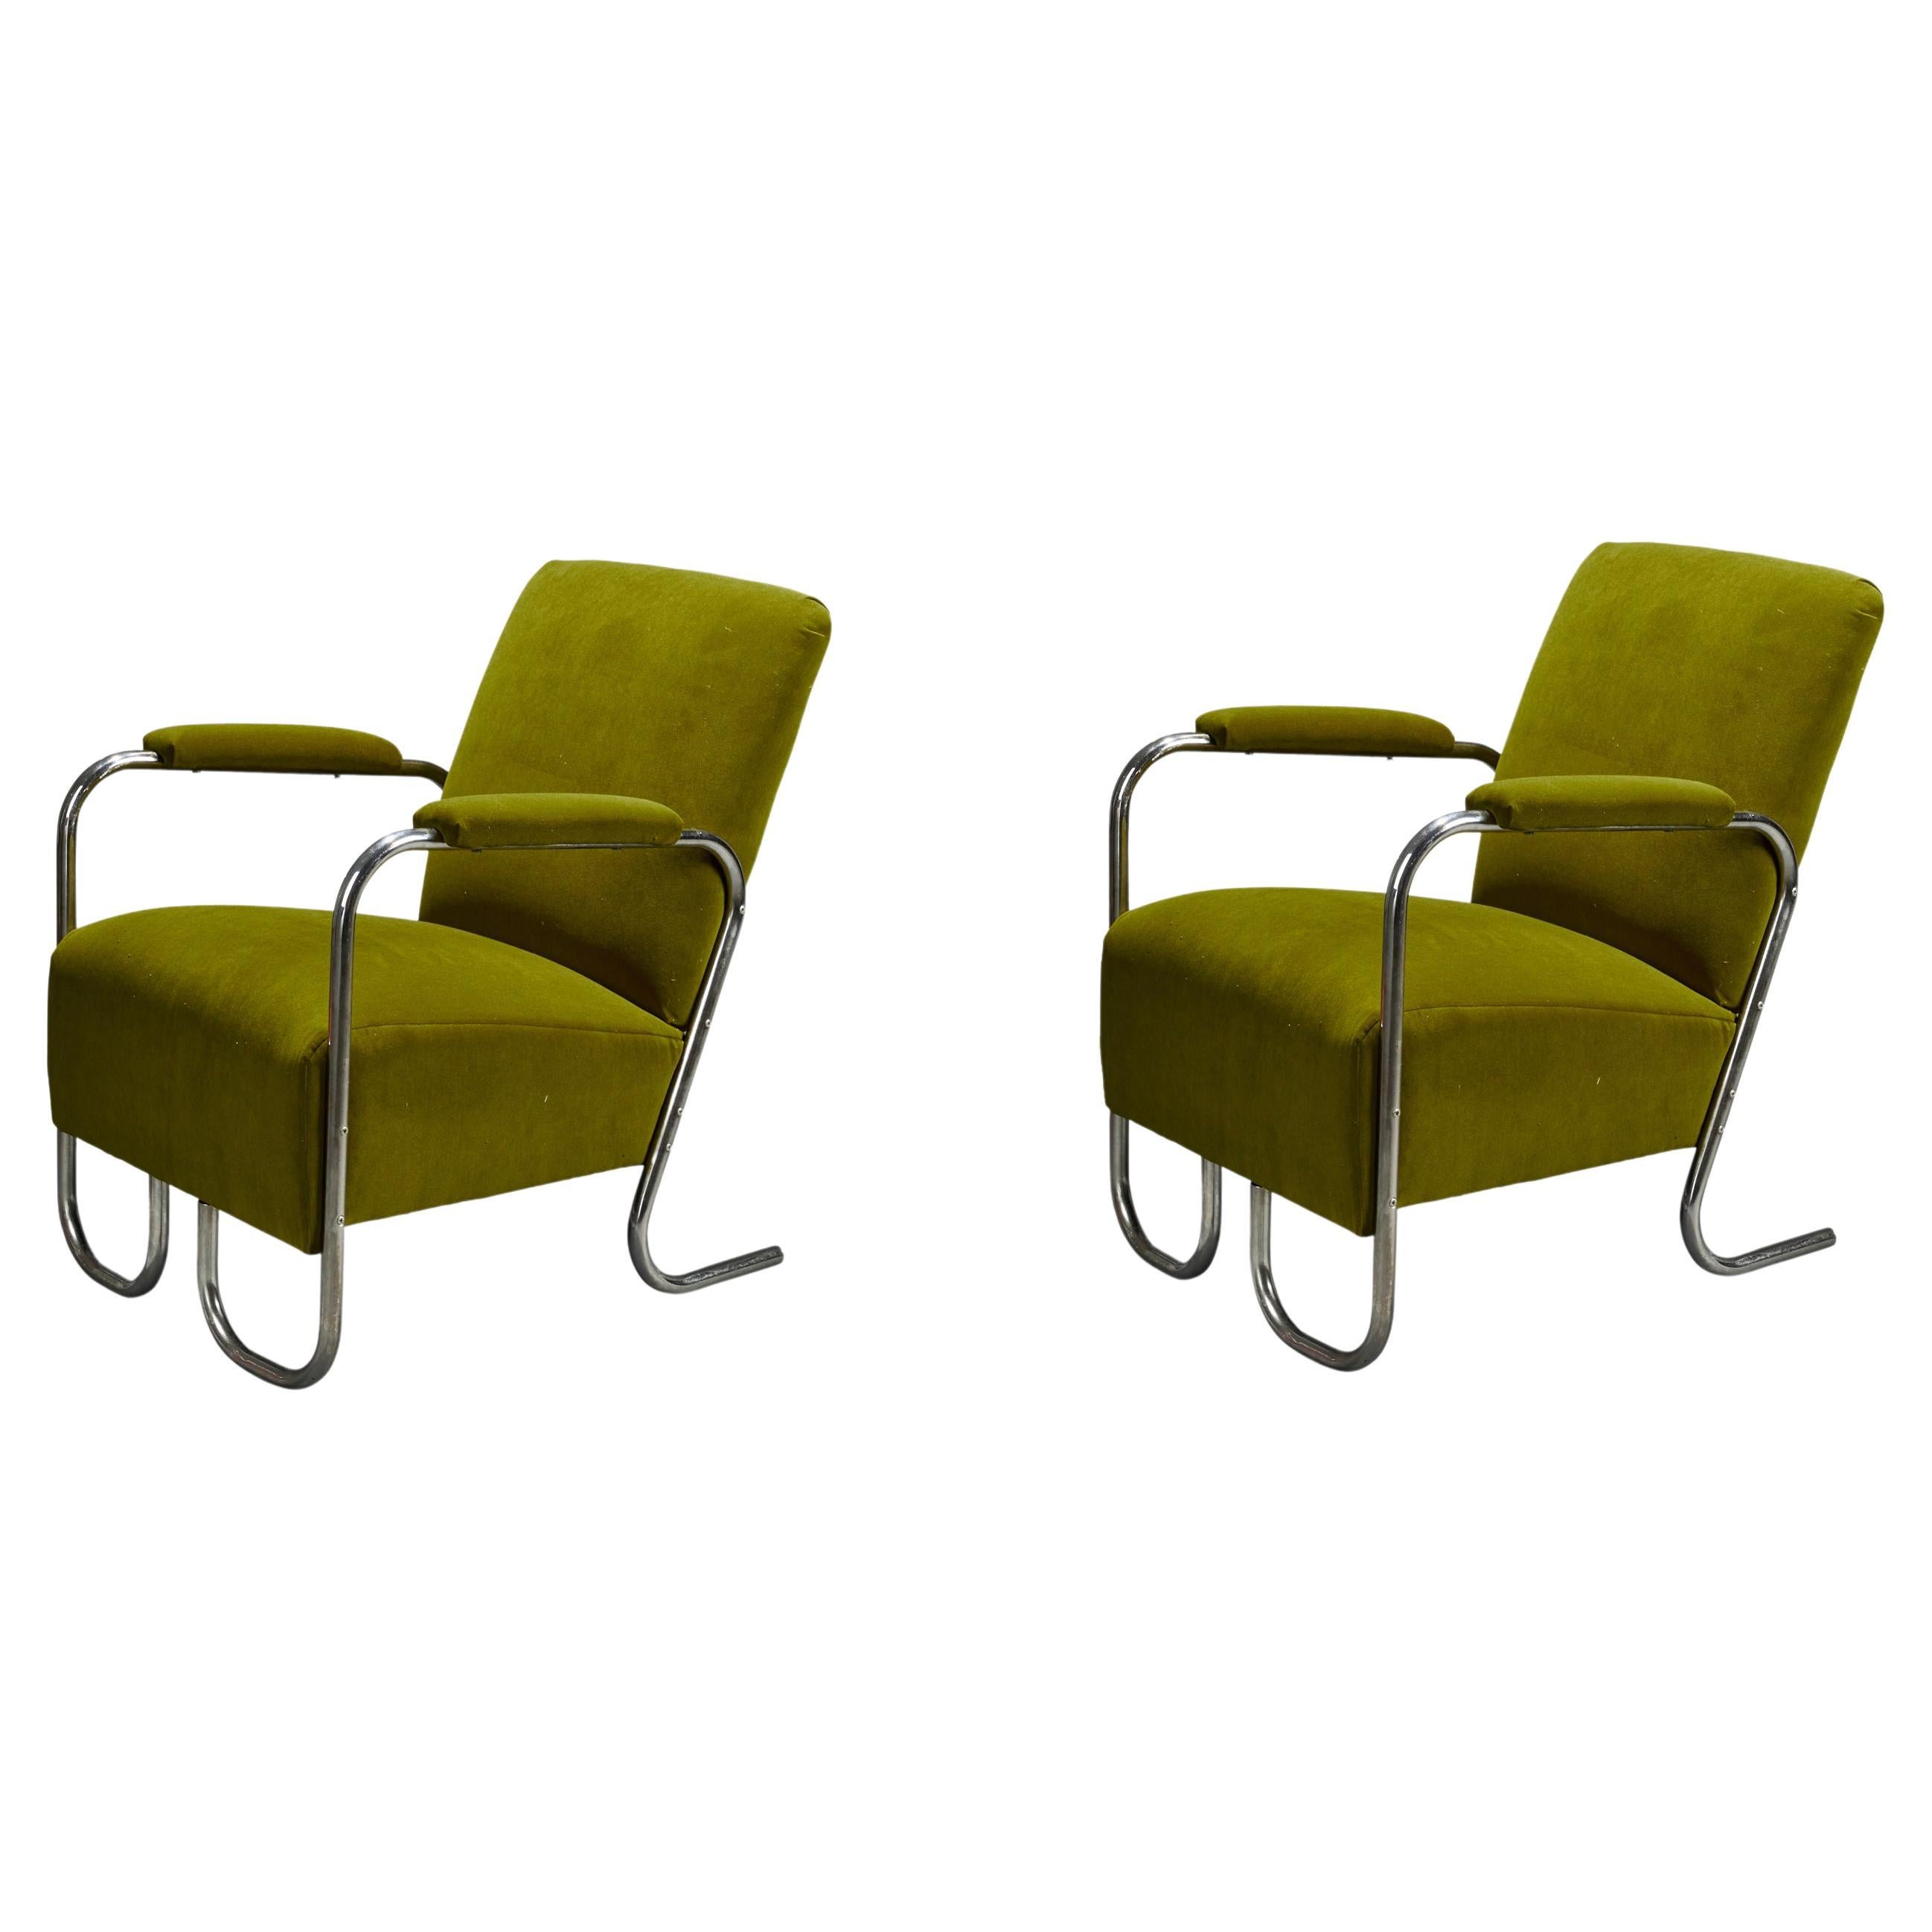 American Designer, Lounge Chairs, Tubular Steel, Green Velvet, USA, 1930s For Sale